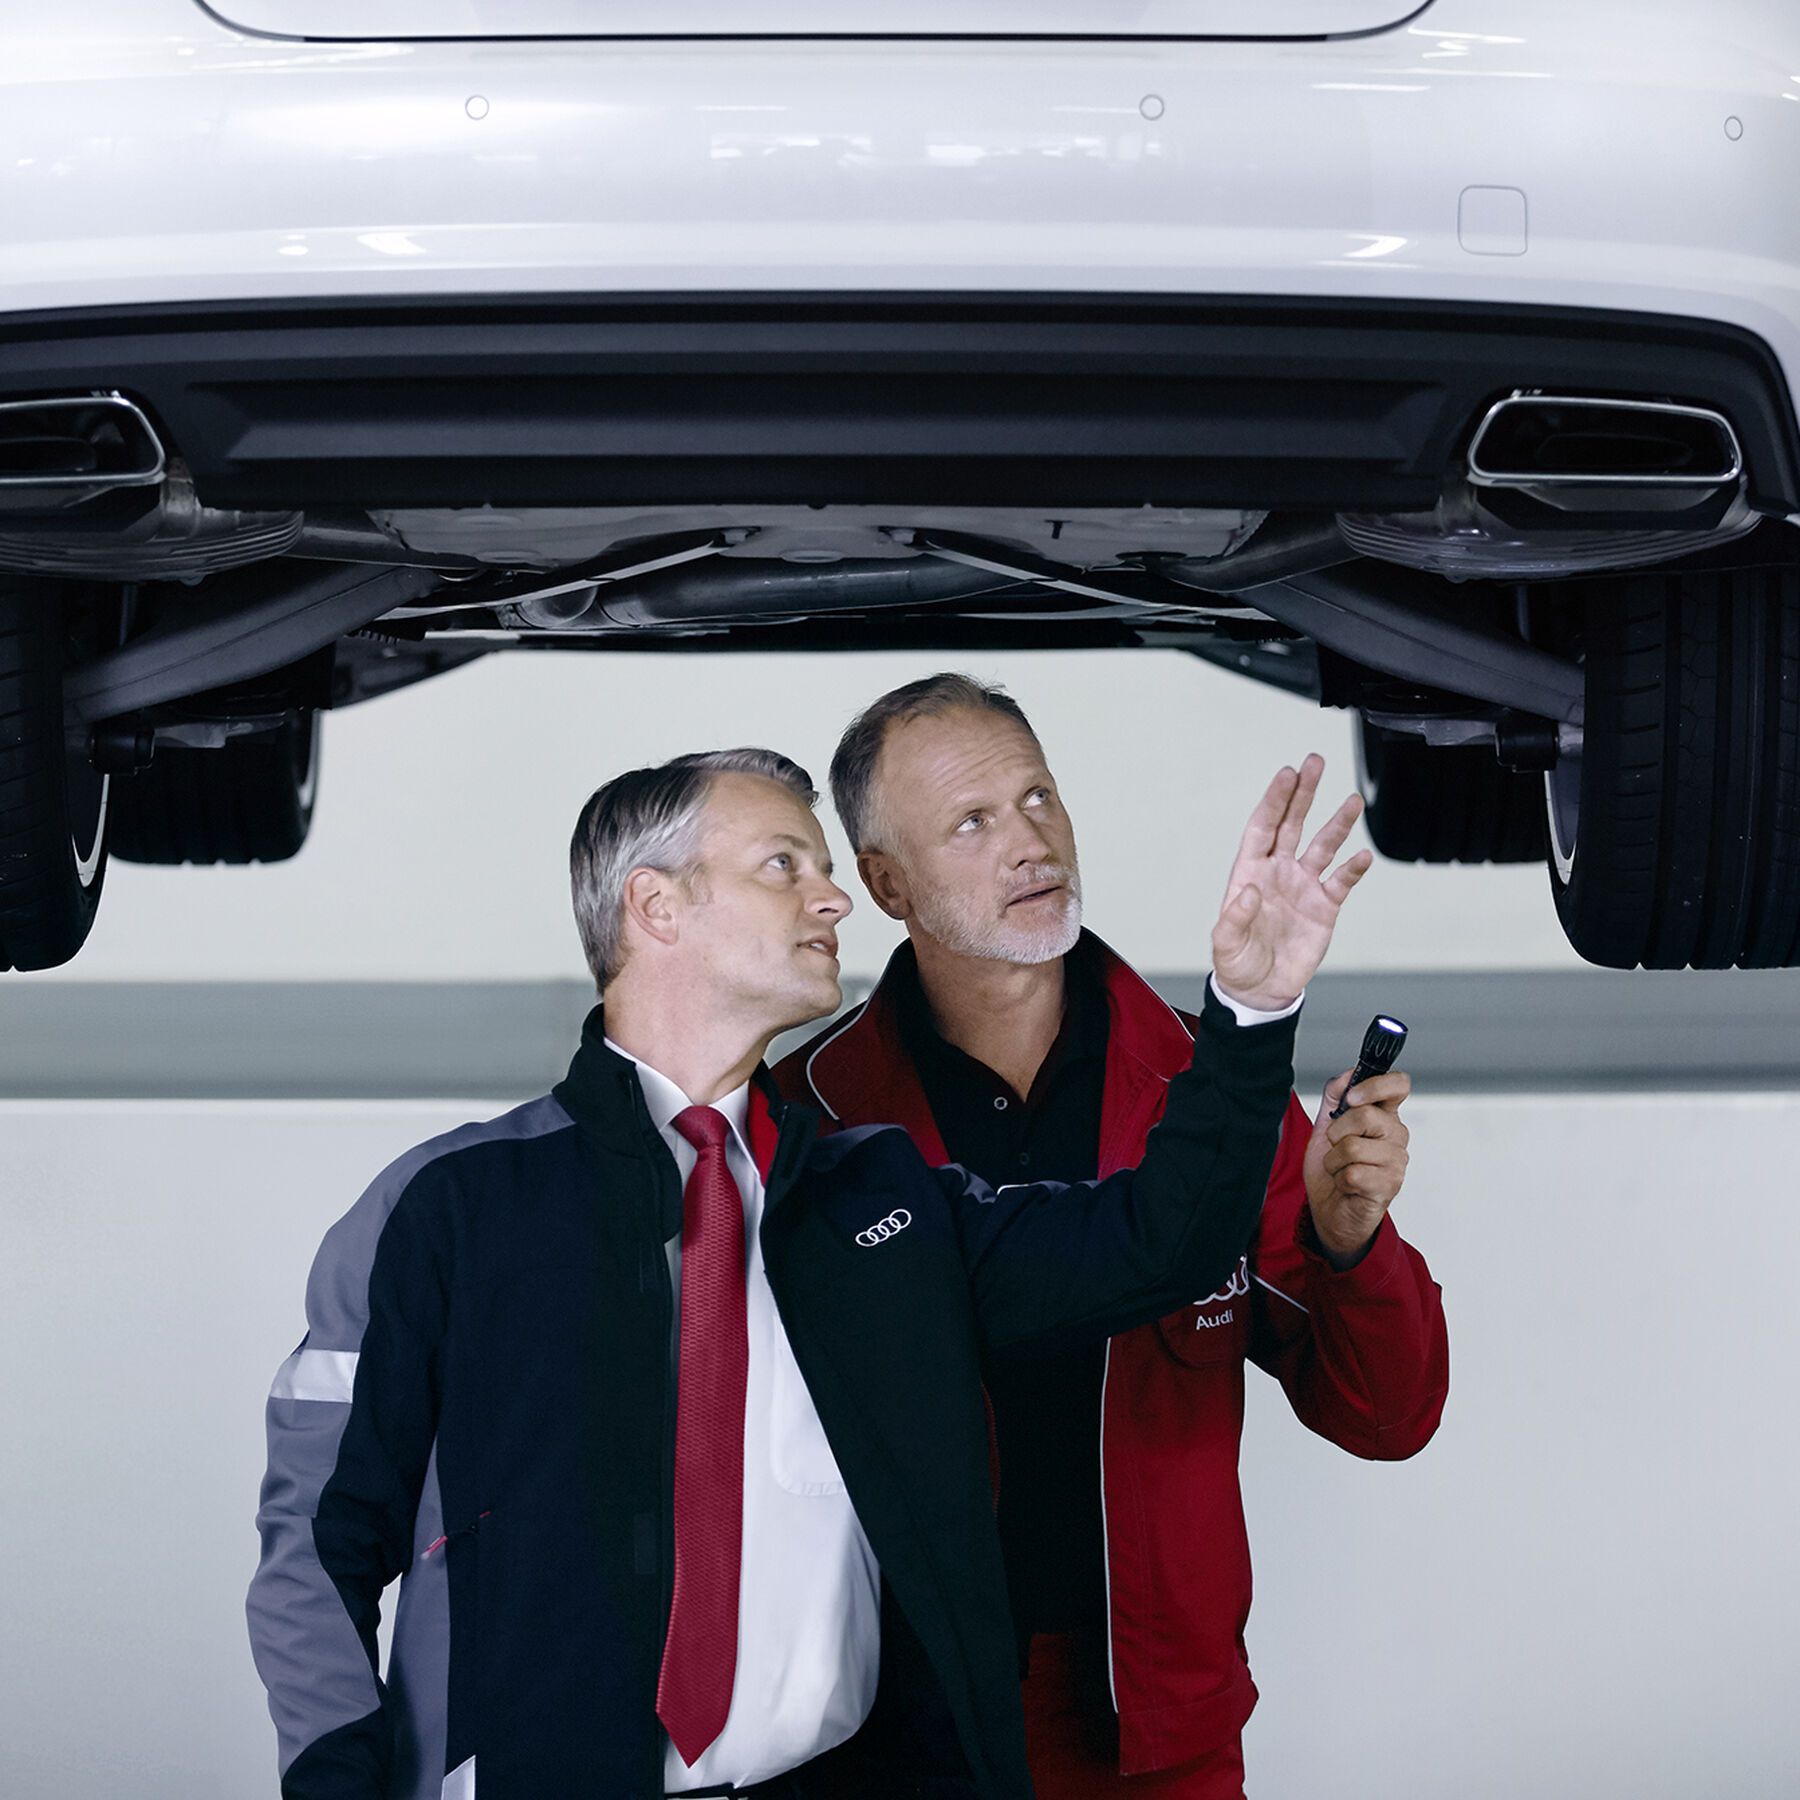 Zwei Audi Mechaniker führen die Pickerl-Überprüfung bei einem Audi durch